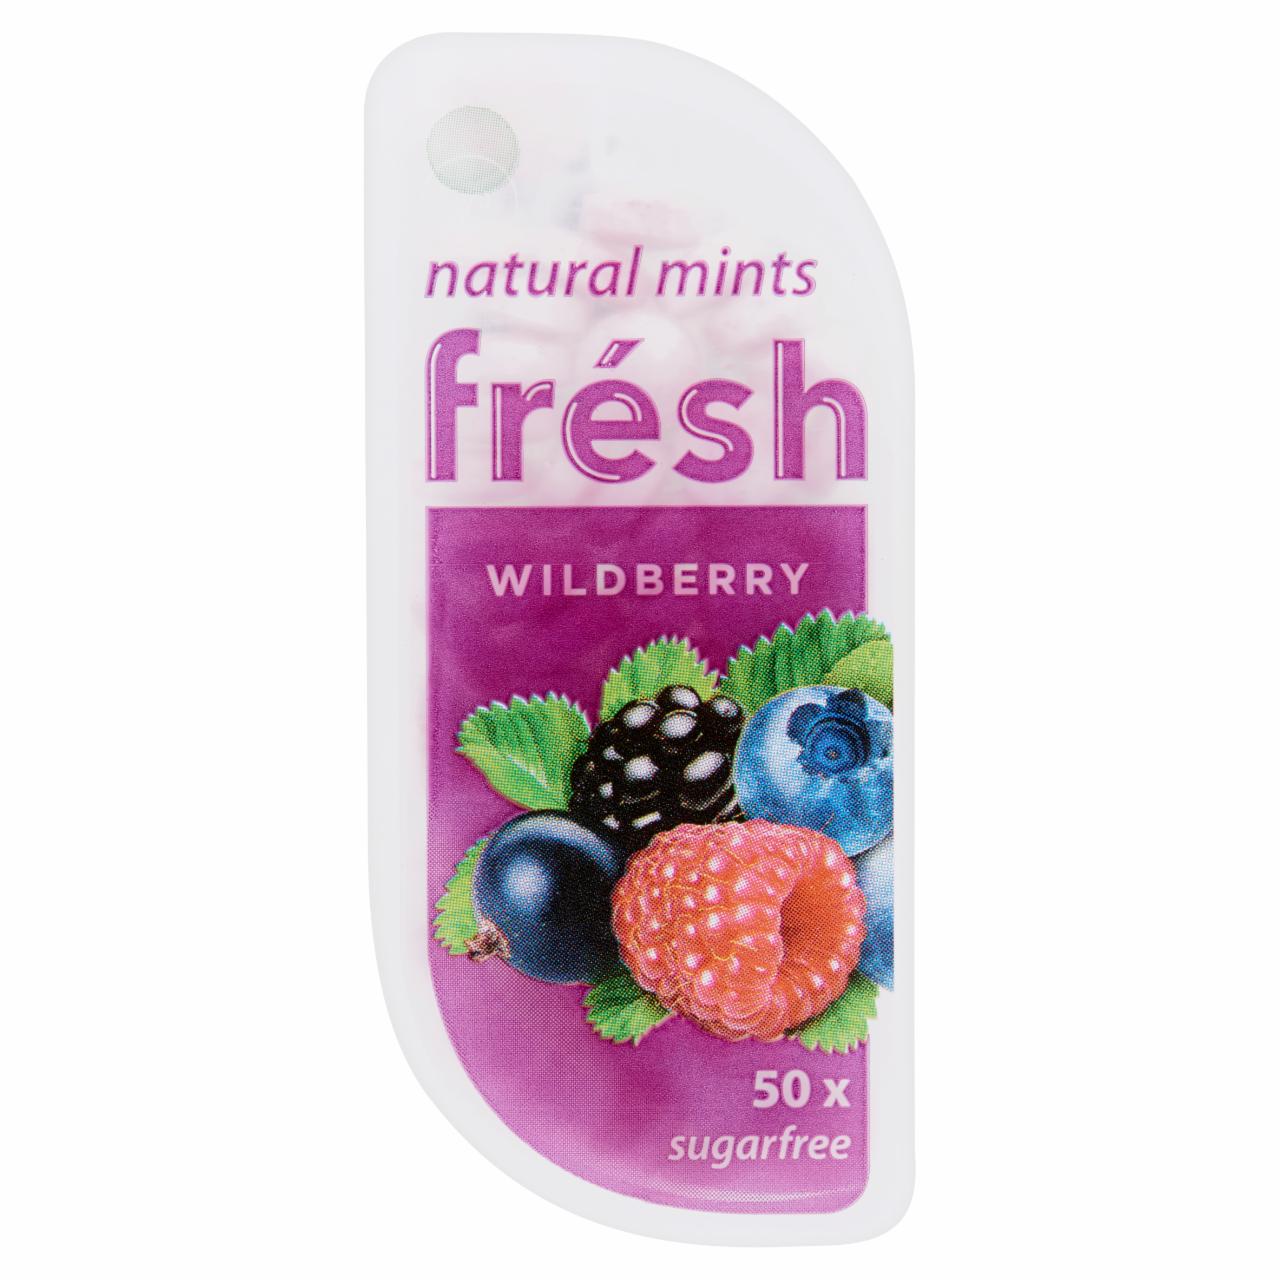 Képek - Frésh erdei gyümölcs ízesítésű cukormentes száj- és leheletfrissítő pasztilla édesítőszerekkel 7 g